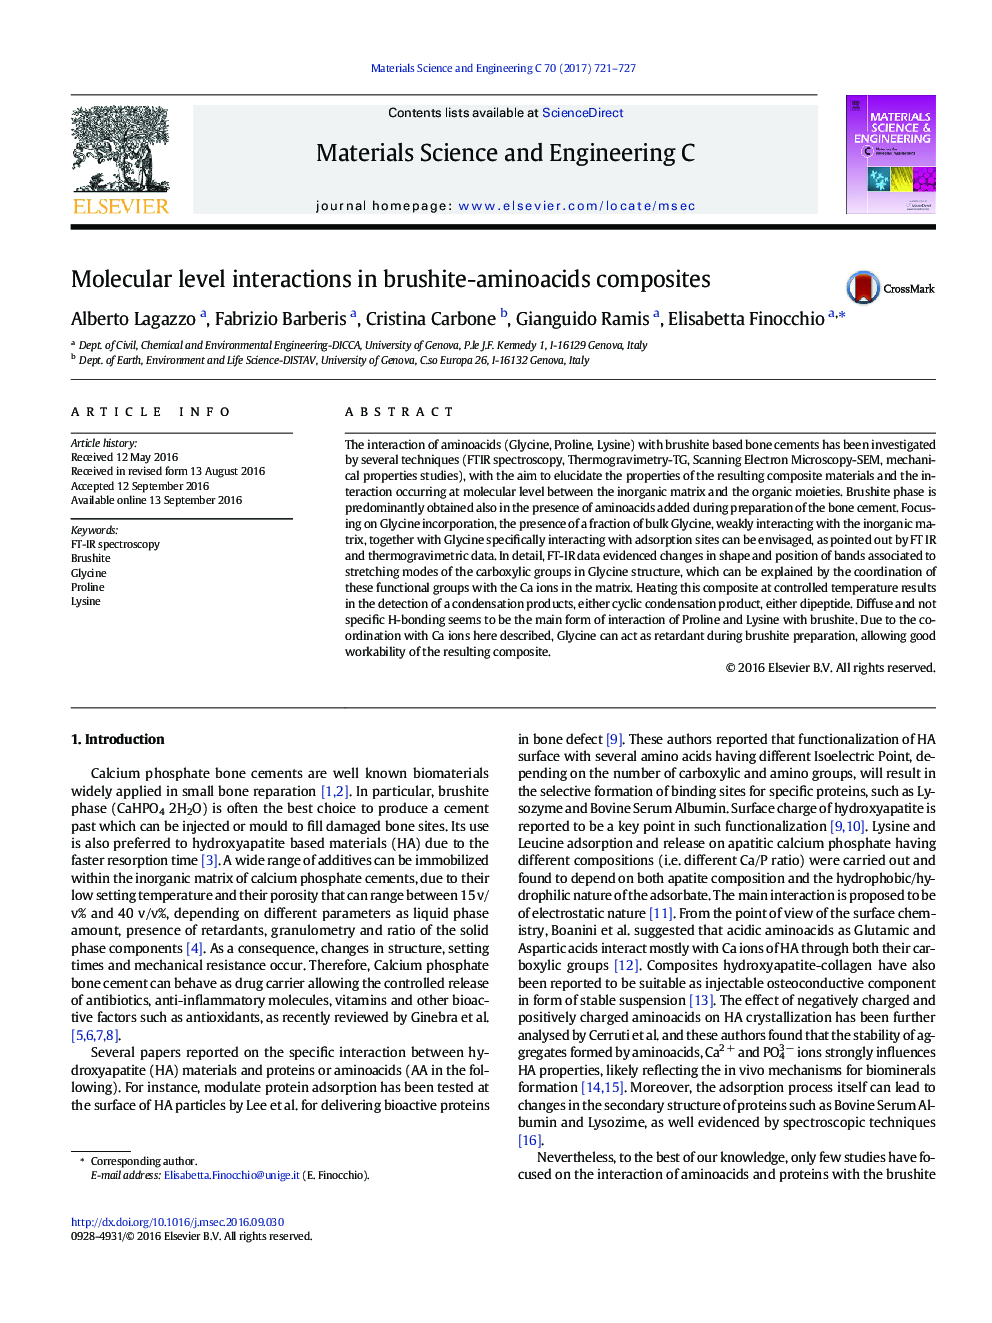 Molecular level interactions in brushite-aminoacids composites